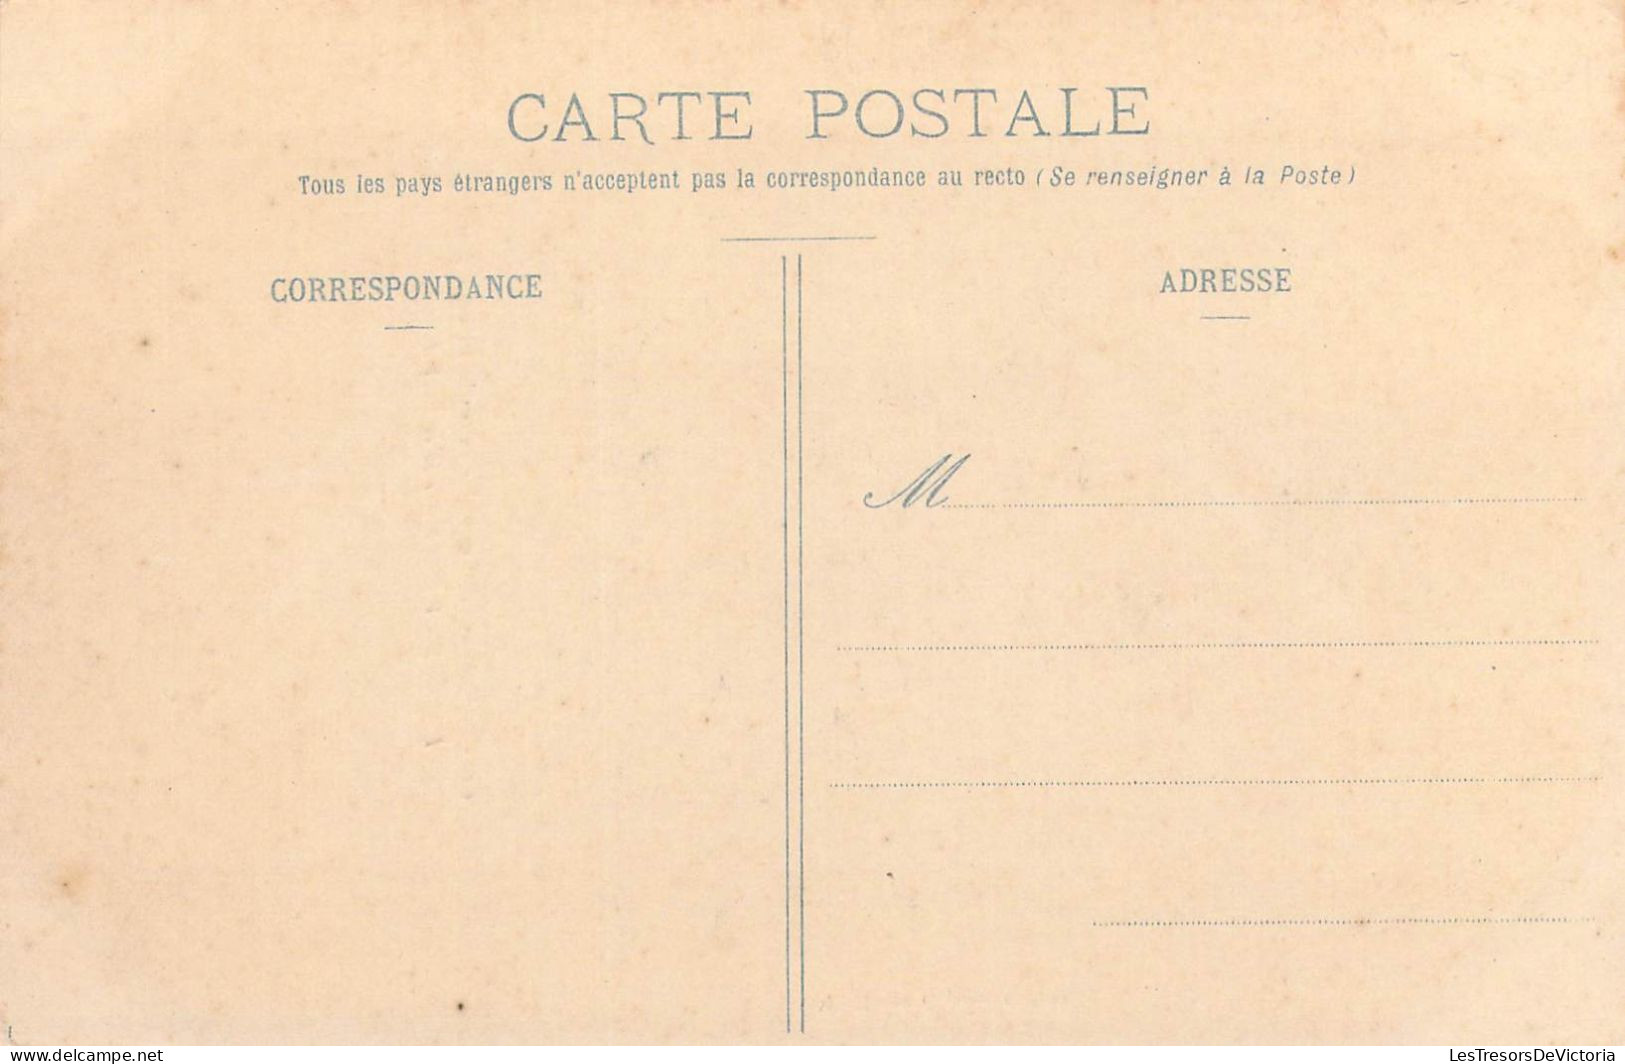 NOUVELLE CALEDONIE - Indigènes Des Loyalties Avant Le Pilou Pilou - Editeur W Henry Caporn - Carte Postale Ancienne - Nouvelle Calédonie